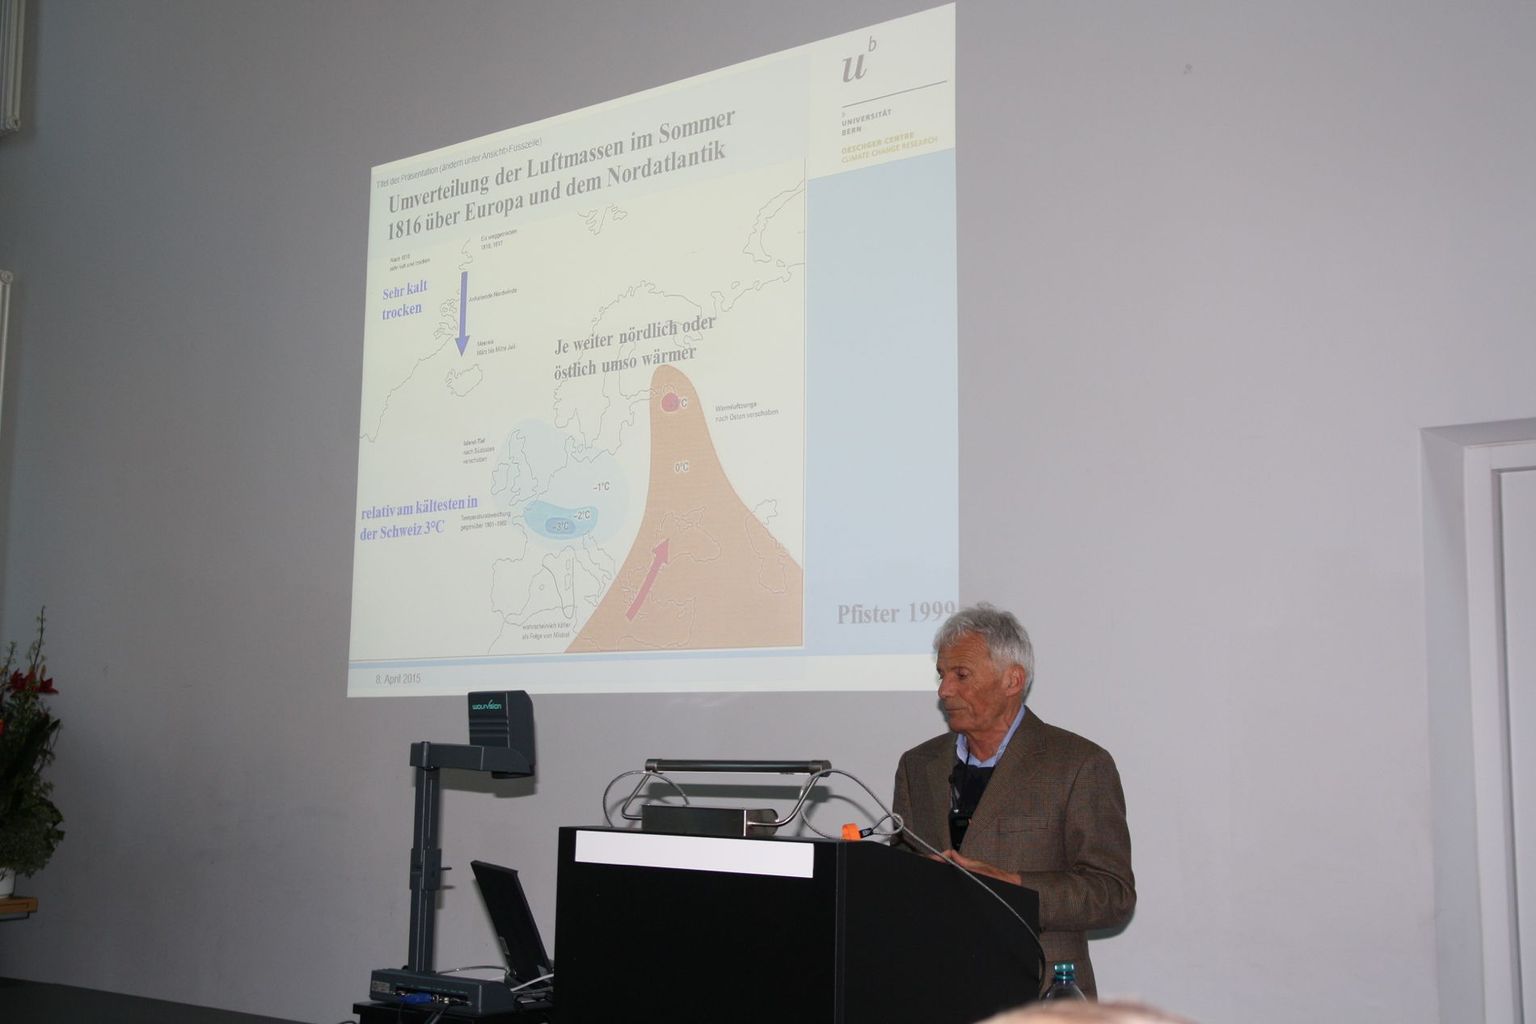 Prof. Chr. Pfister résume les événements lors de l'éruption et les conséquences en Europe.